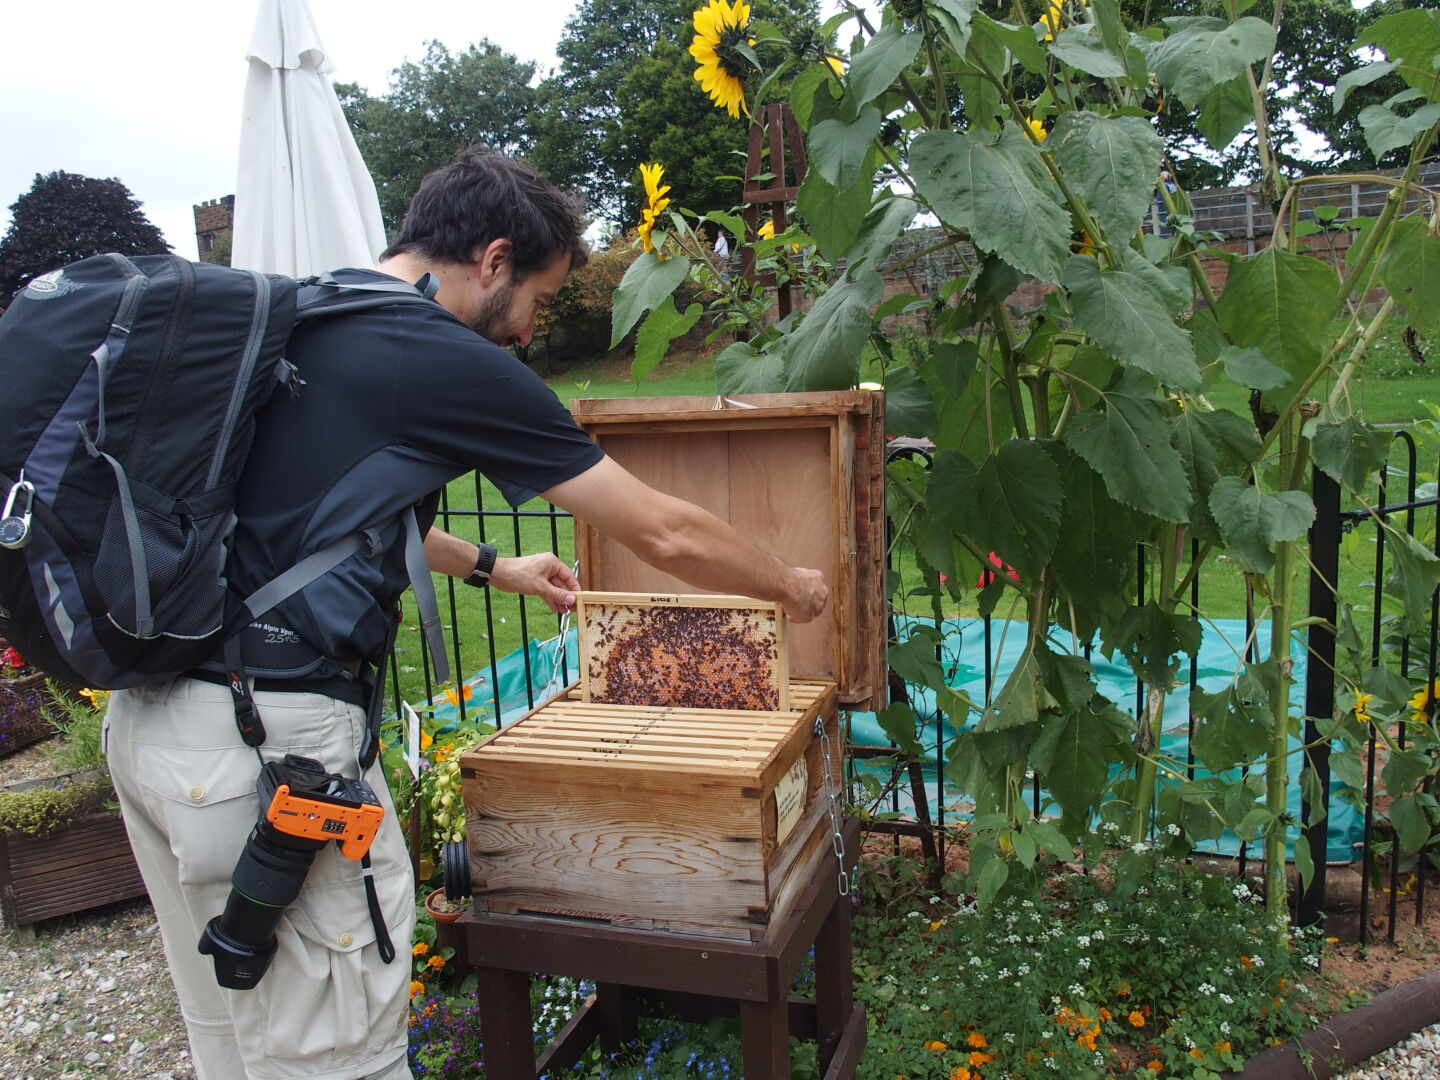 Beeing a beekeeper.